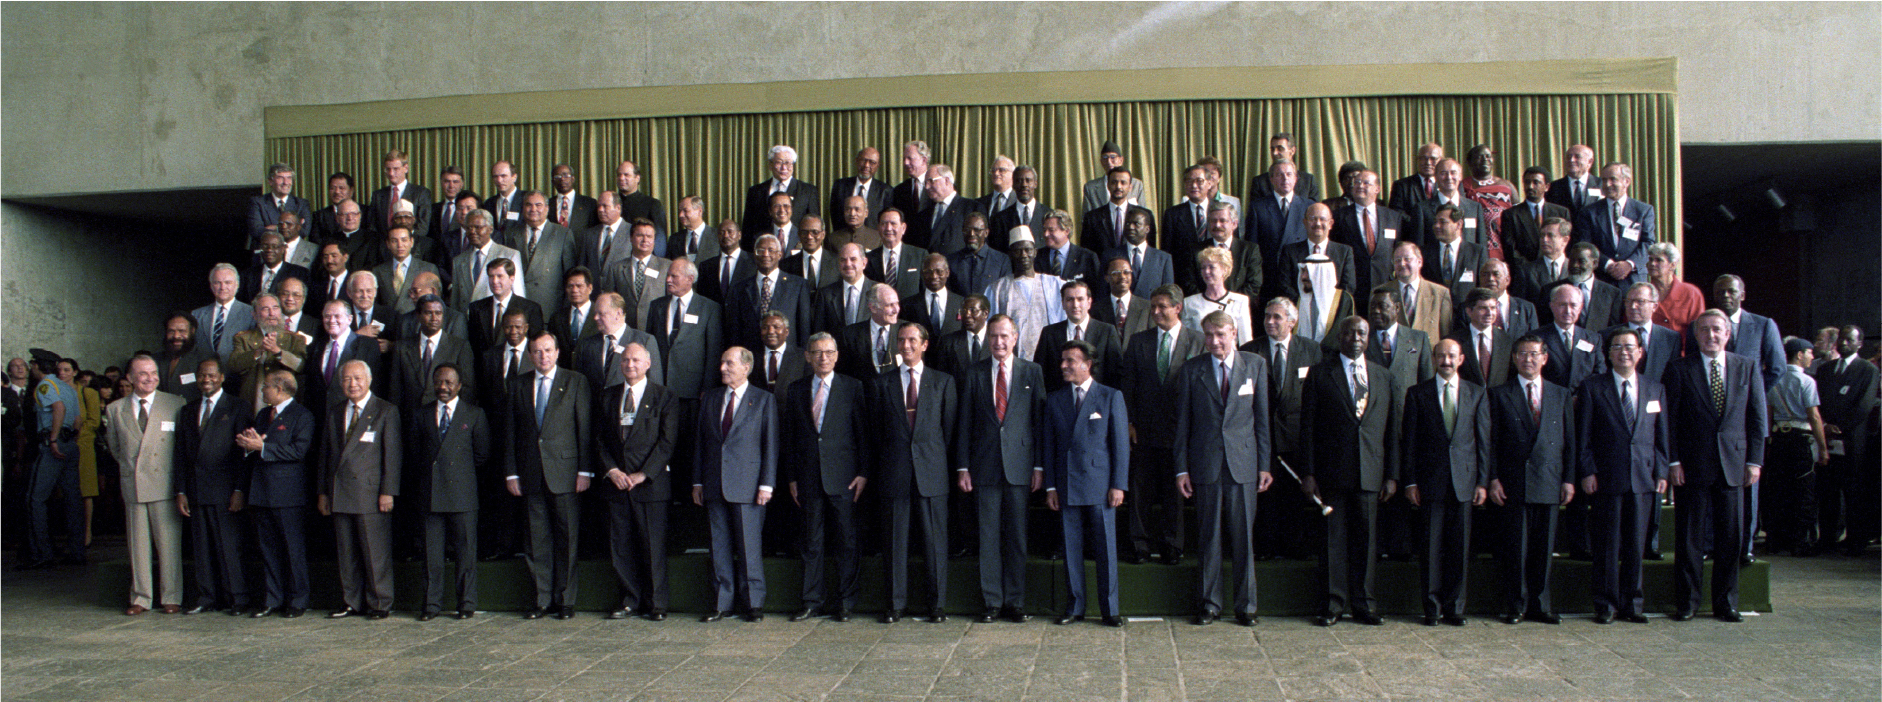 Photo de groupe des dirigeants mondiaux réunis pour le Sommet.